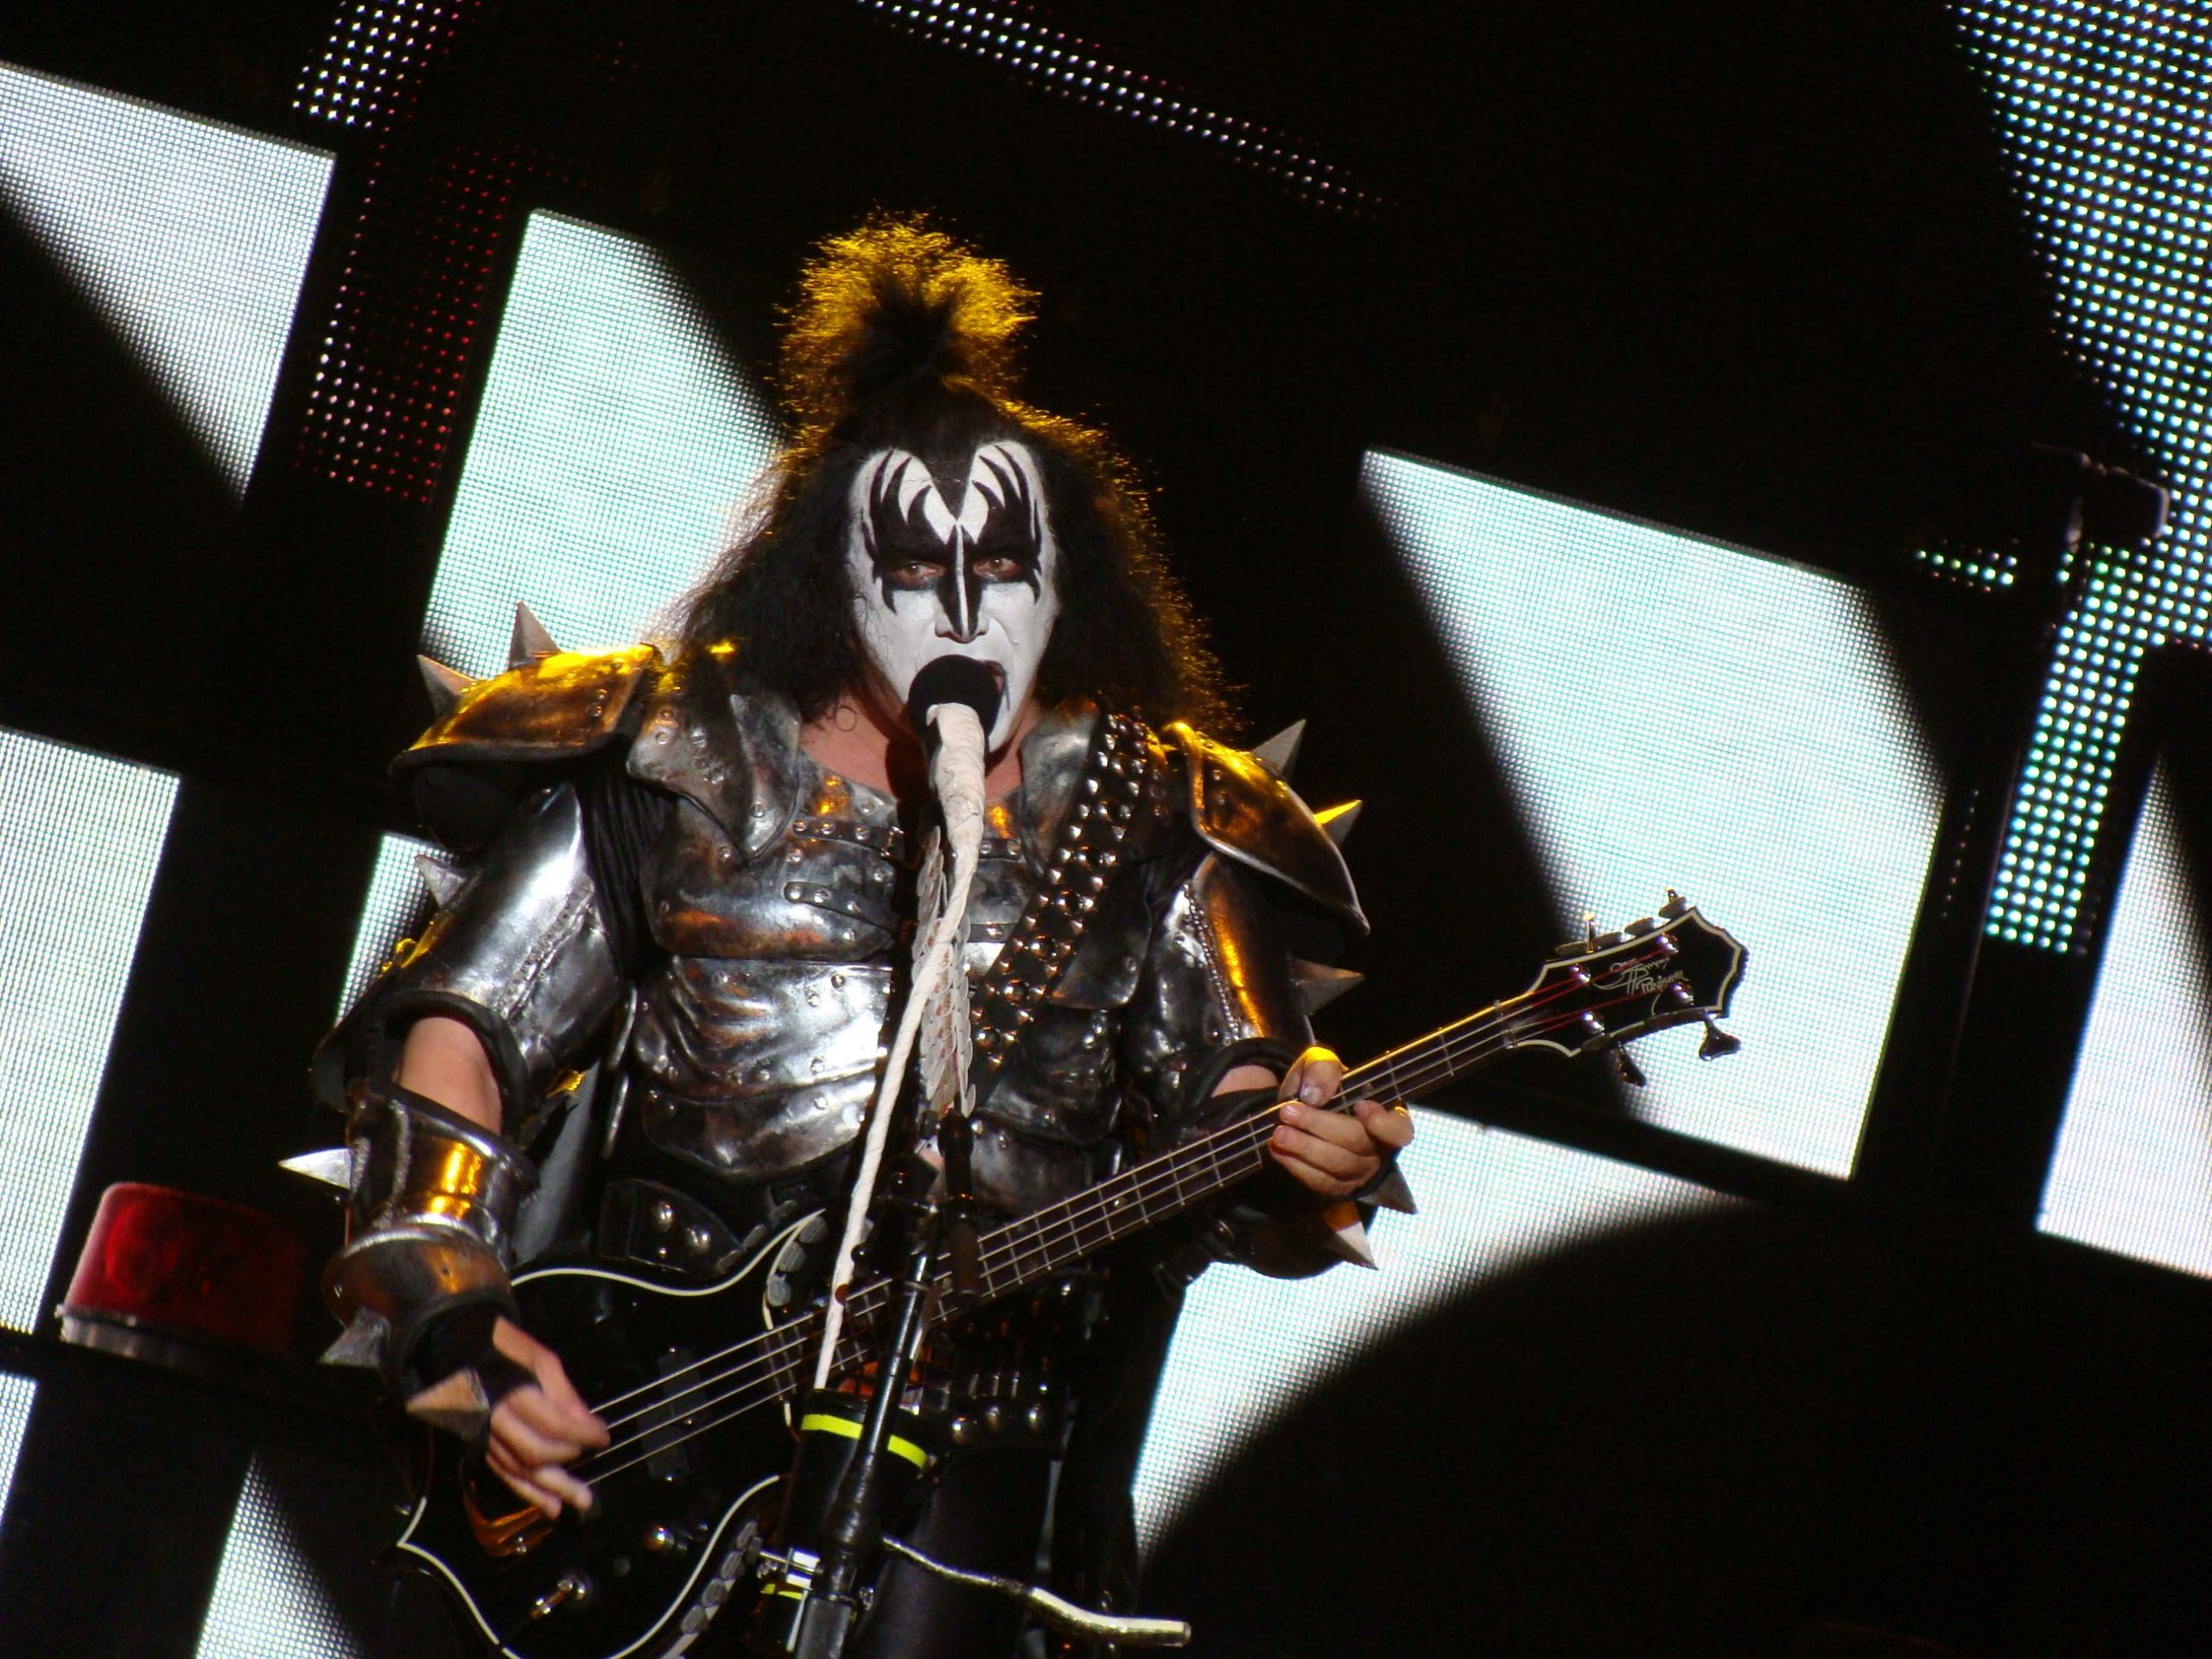 Vocalista do Kiss nega acusação de assédio: “Estou aqui para me defender”